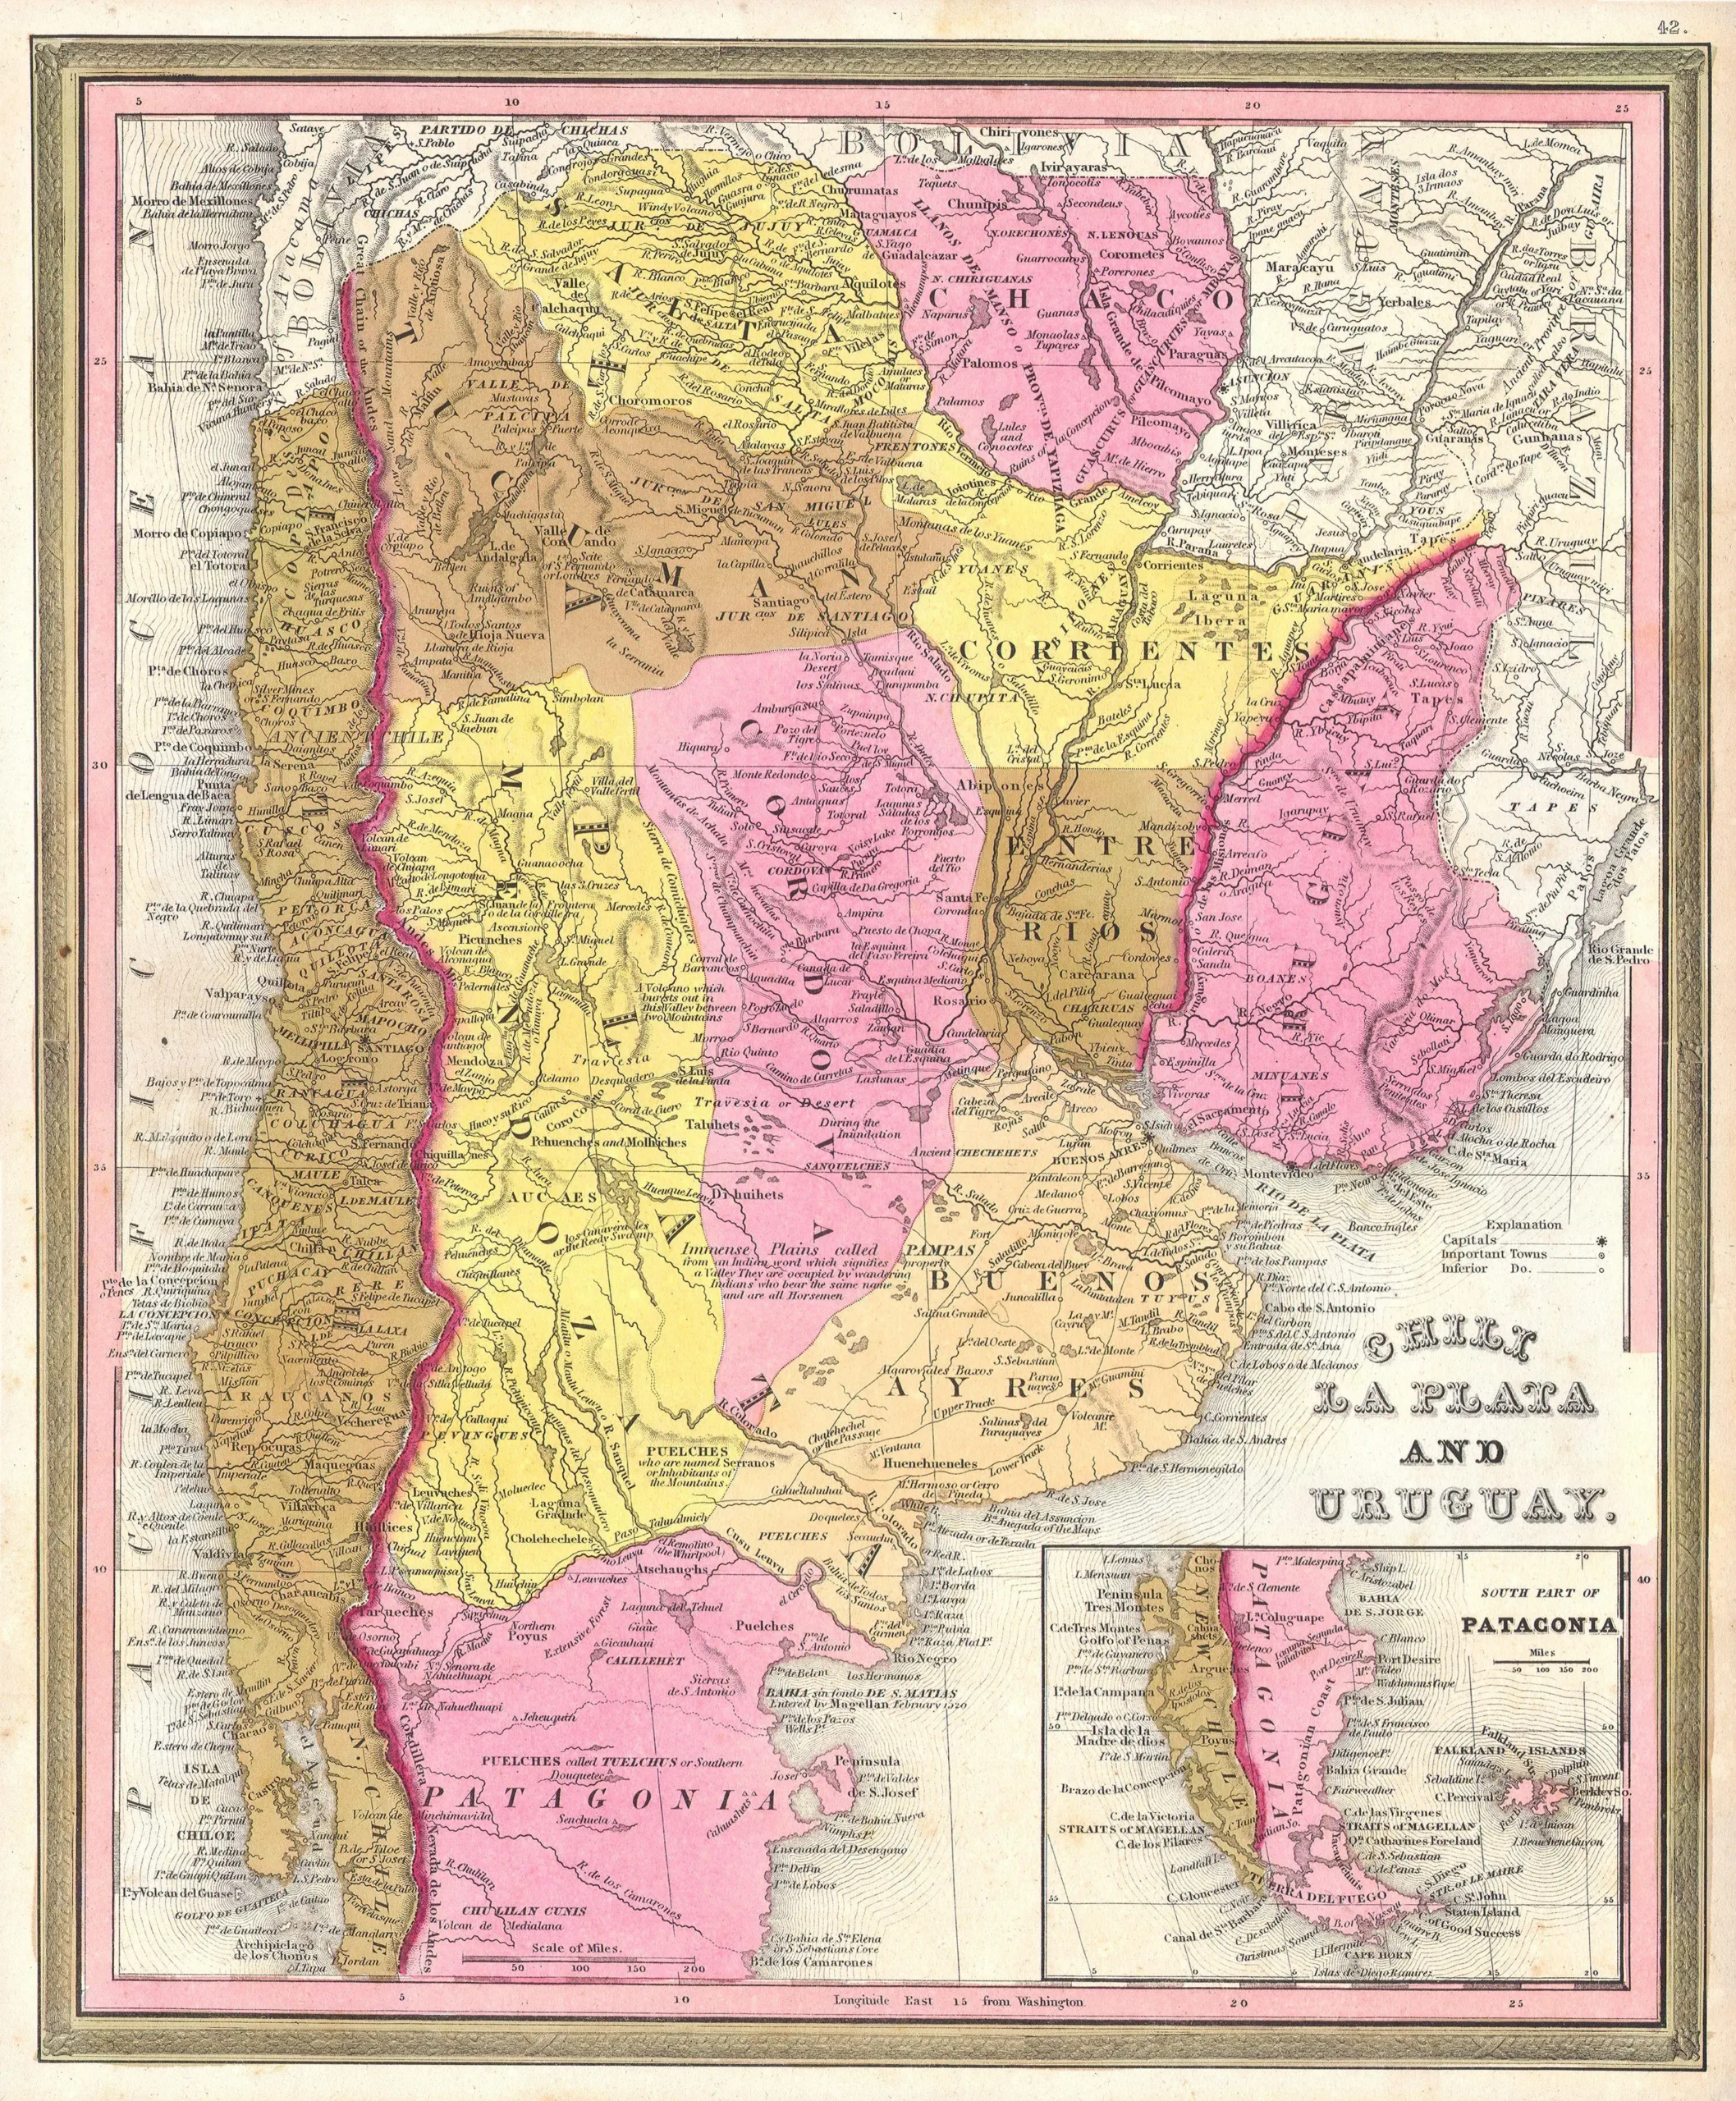 autonomias provinciales 1820 a 1852 resumen - Qué pasó con las provincias en 1820